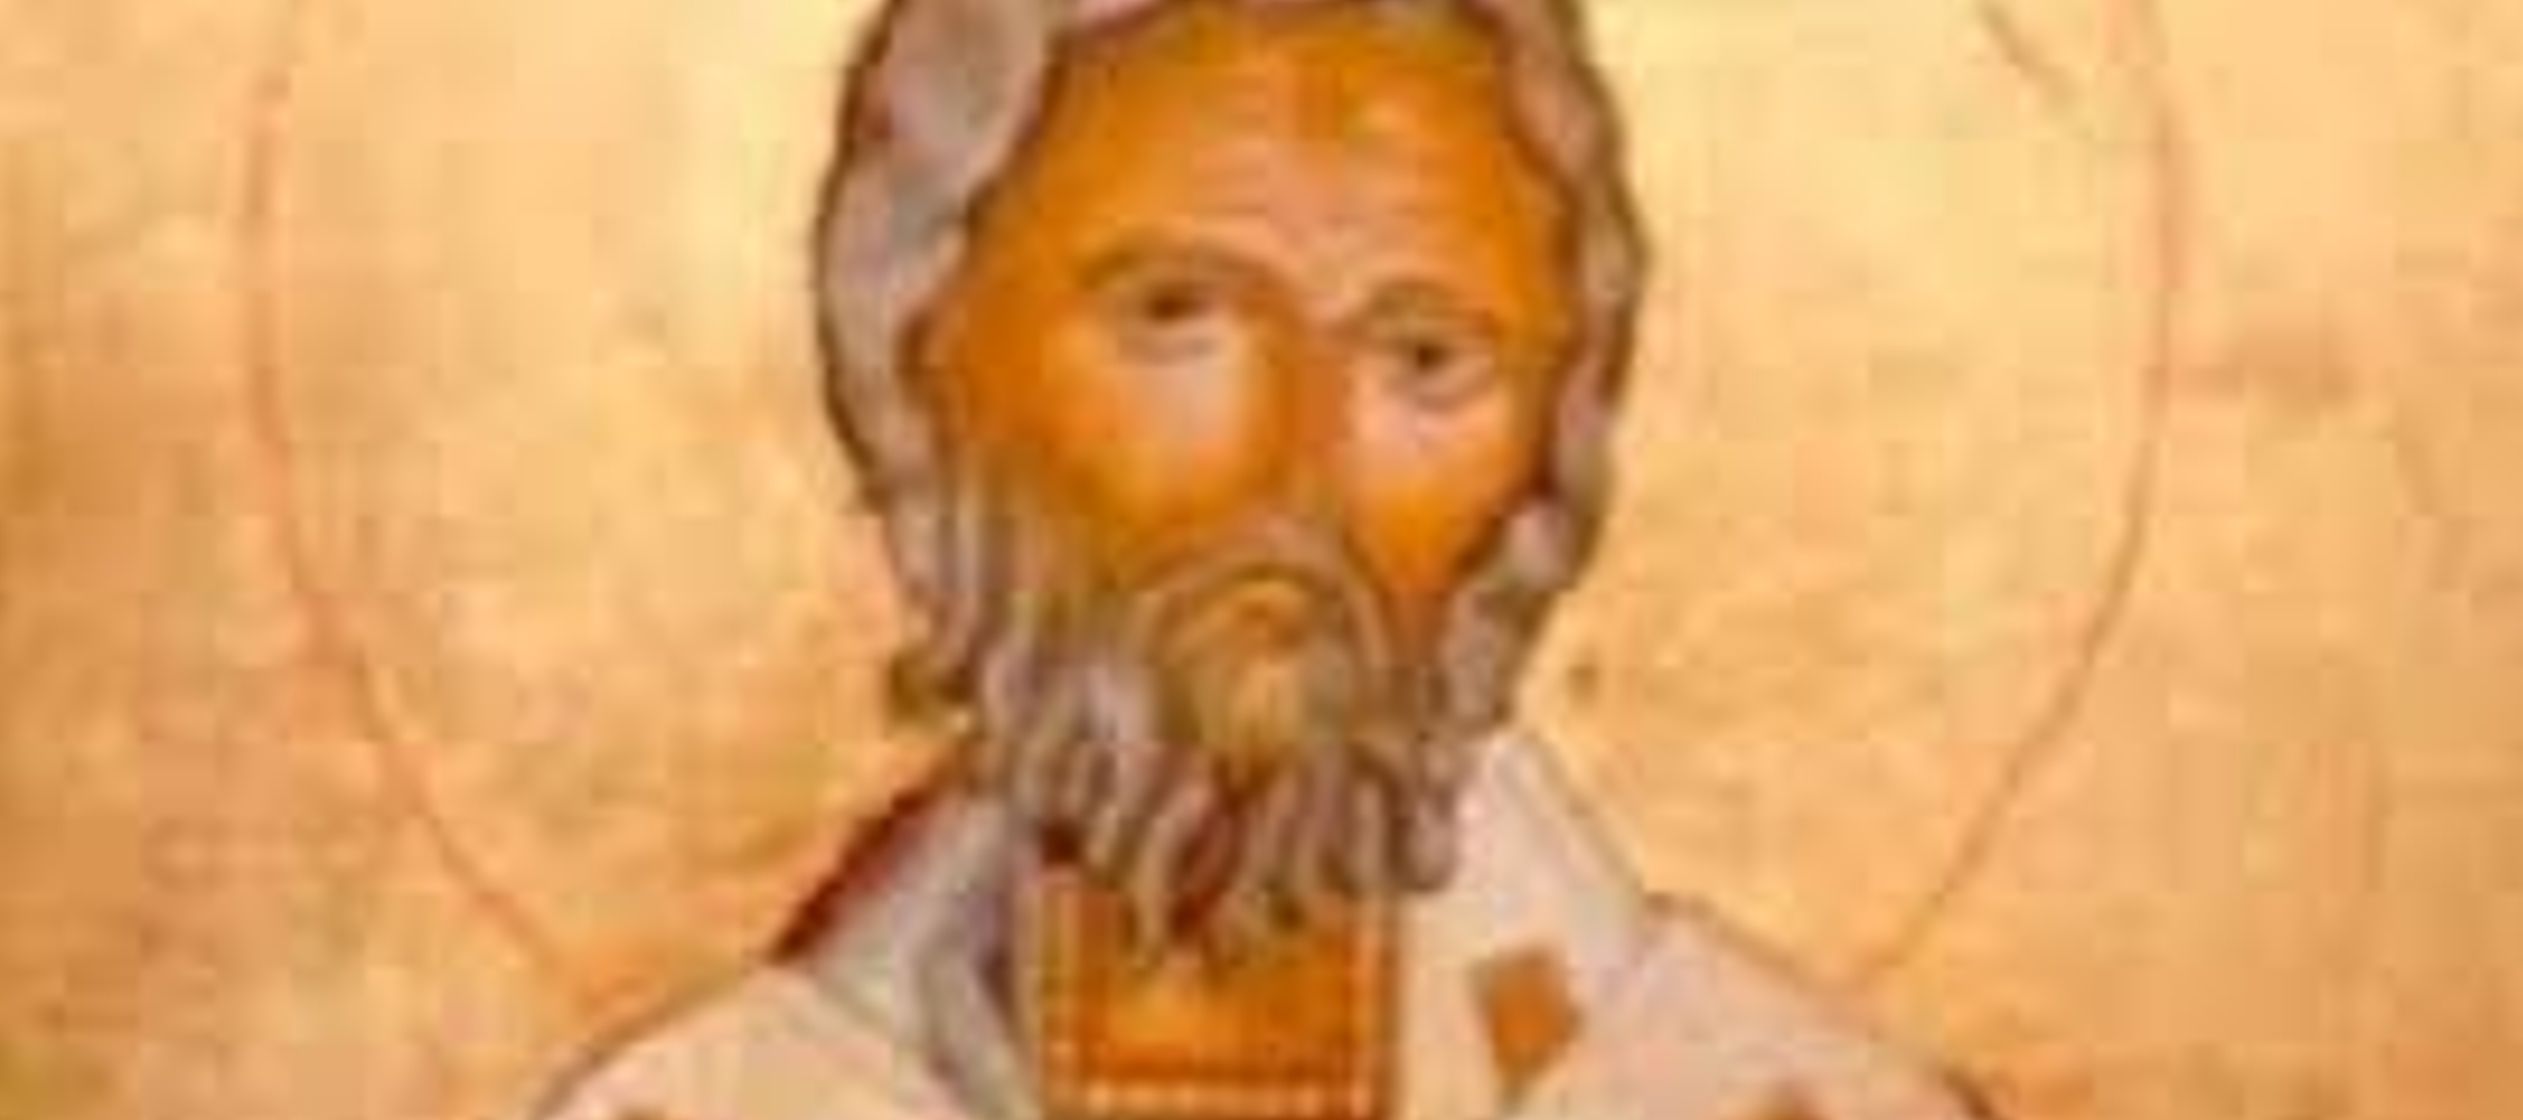 Este santo, muy popular en el norte de Europa, vivió en un periodo sumamente difícil...